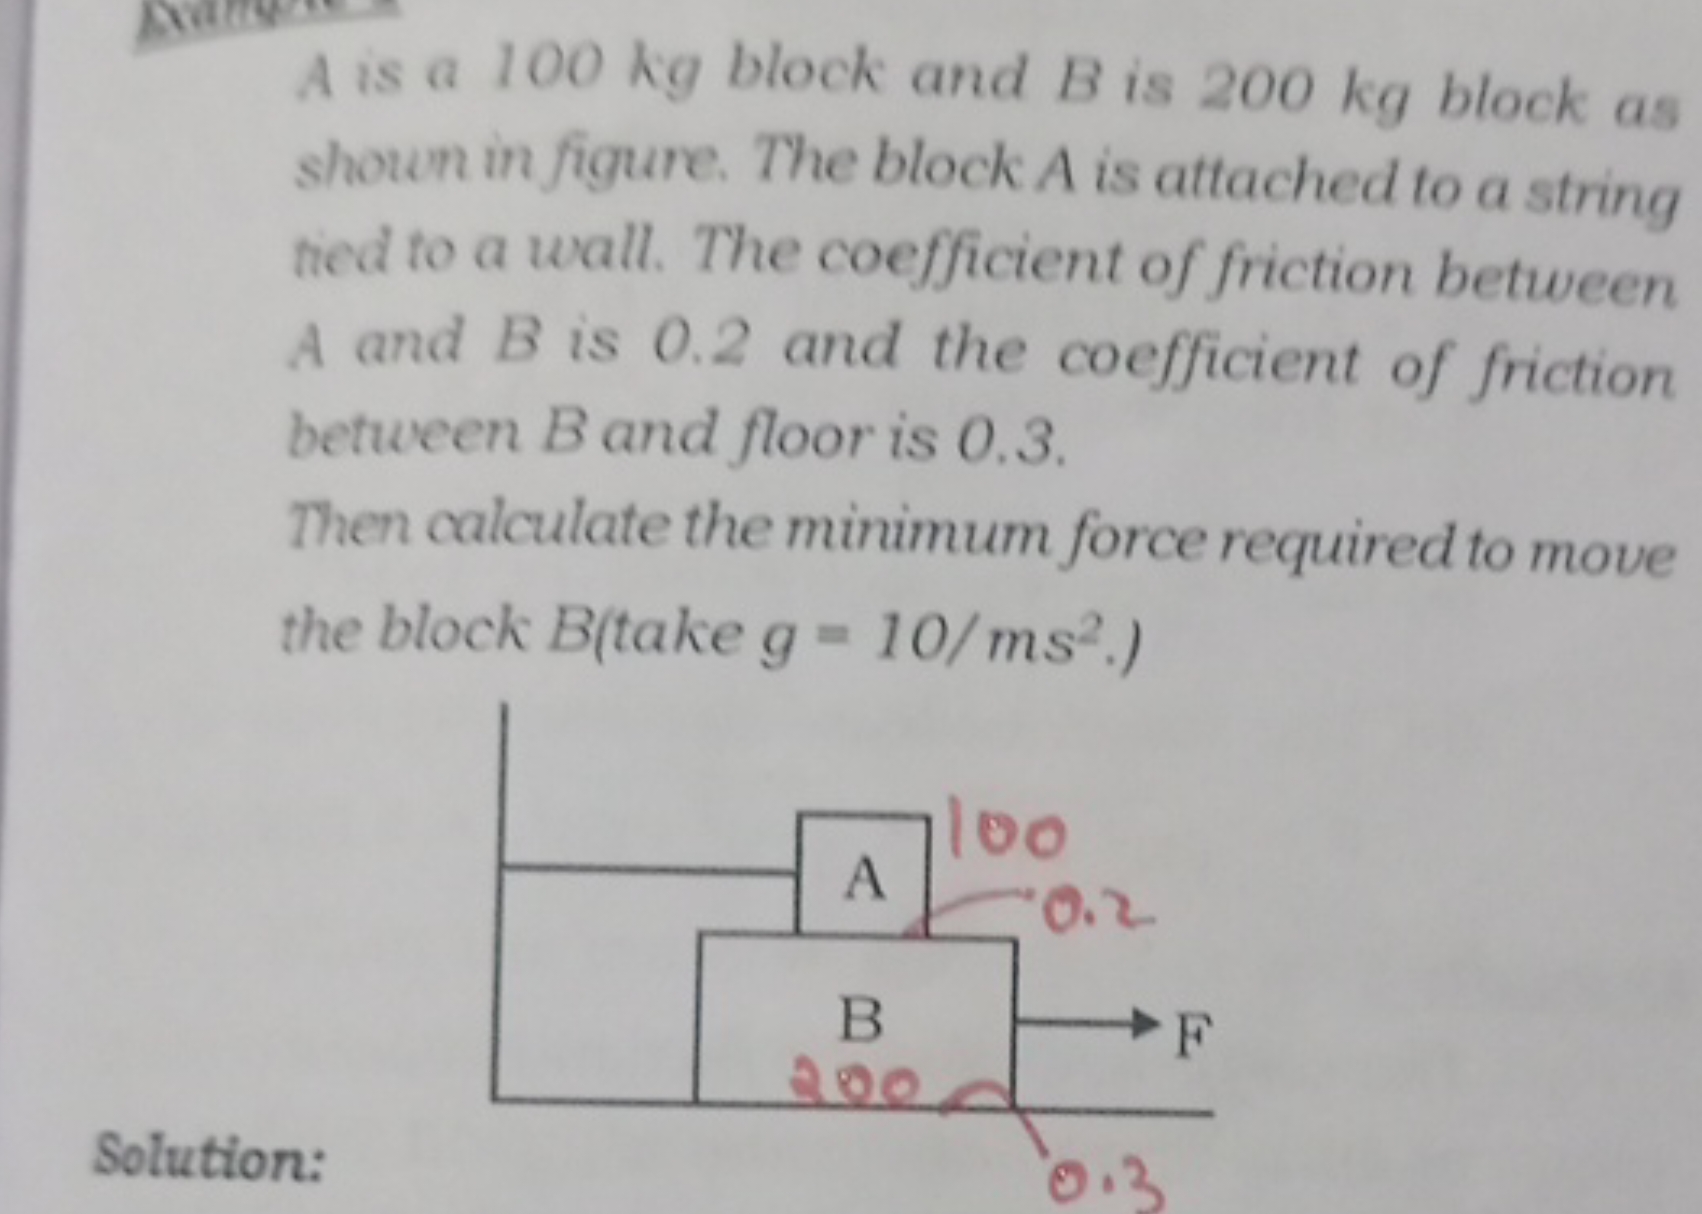 A is a 100 kg block and B is 200 kg block as shoun in figure. The bloc